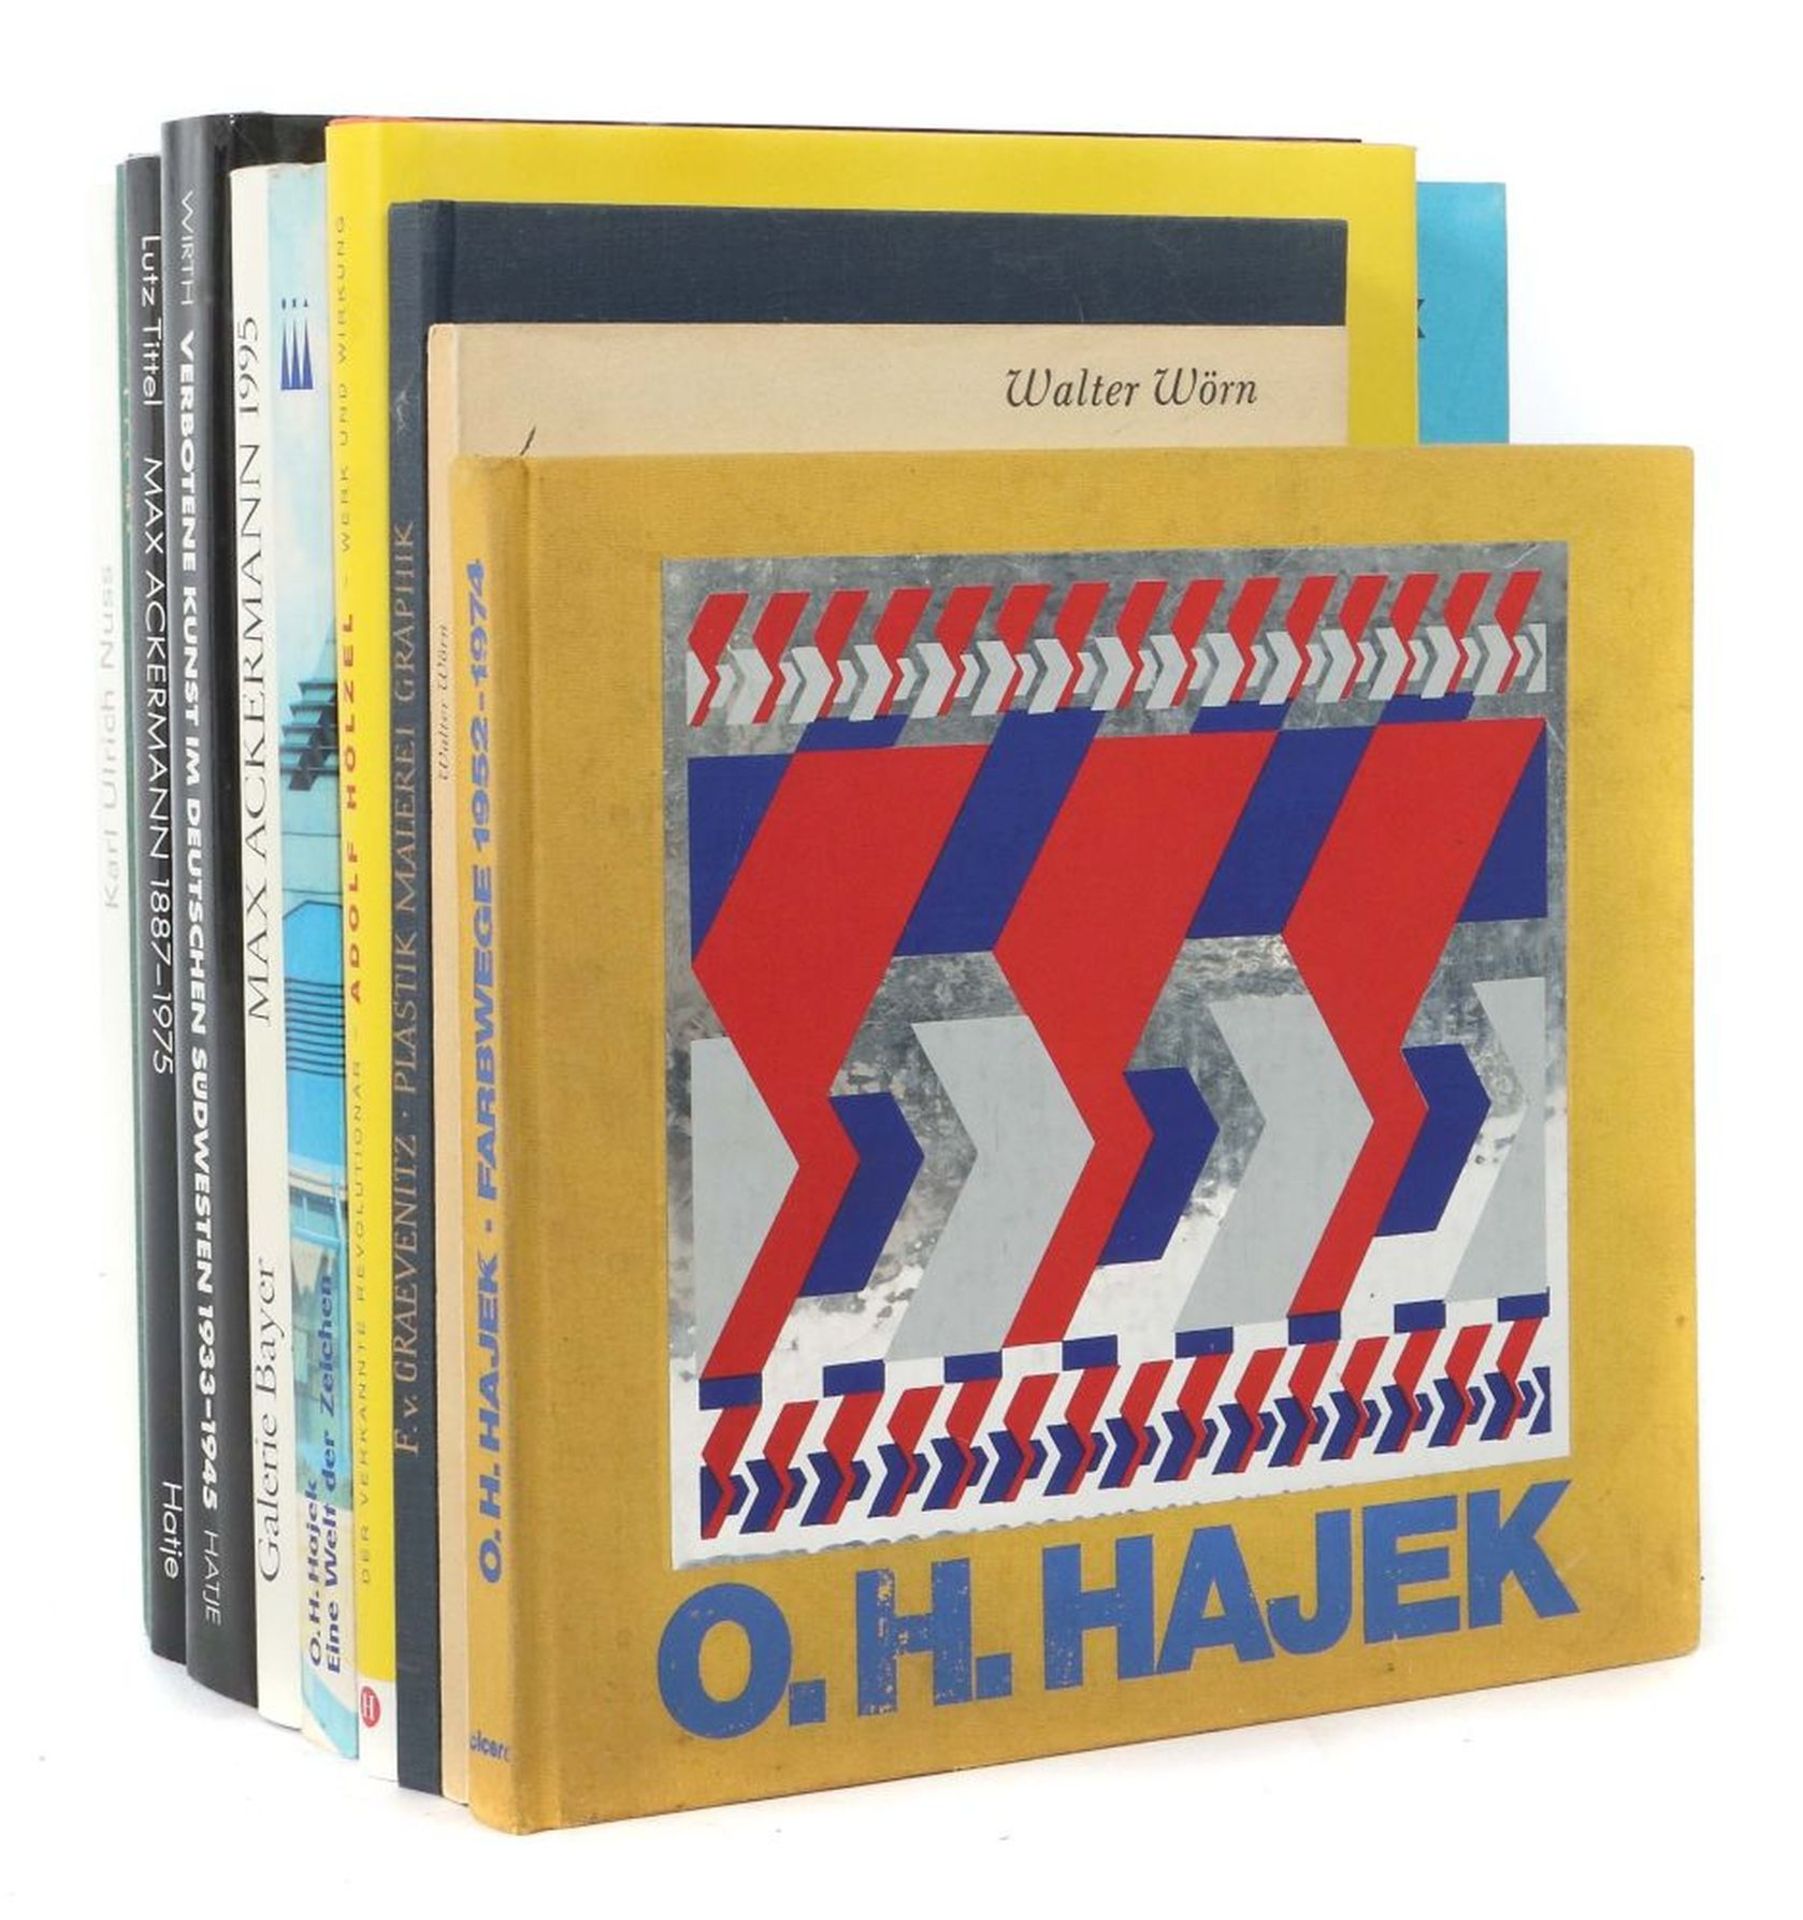 10 Kunstbücher Hajek - Eine Welt der